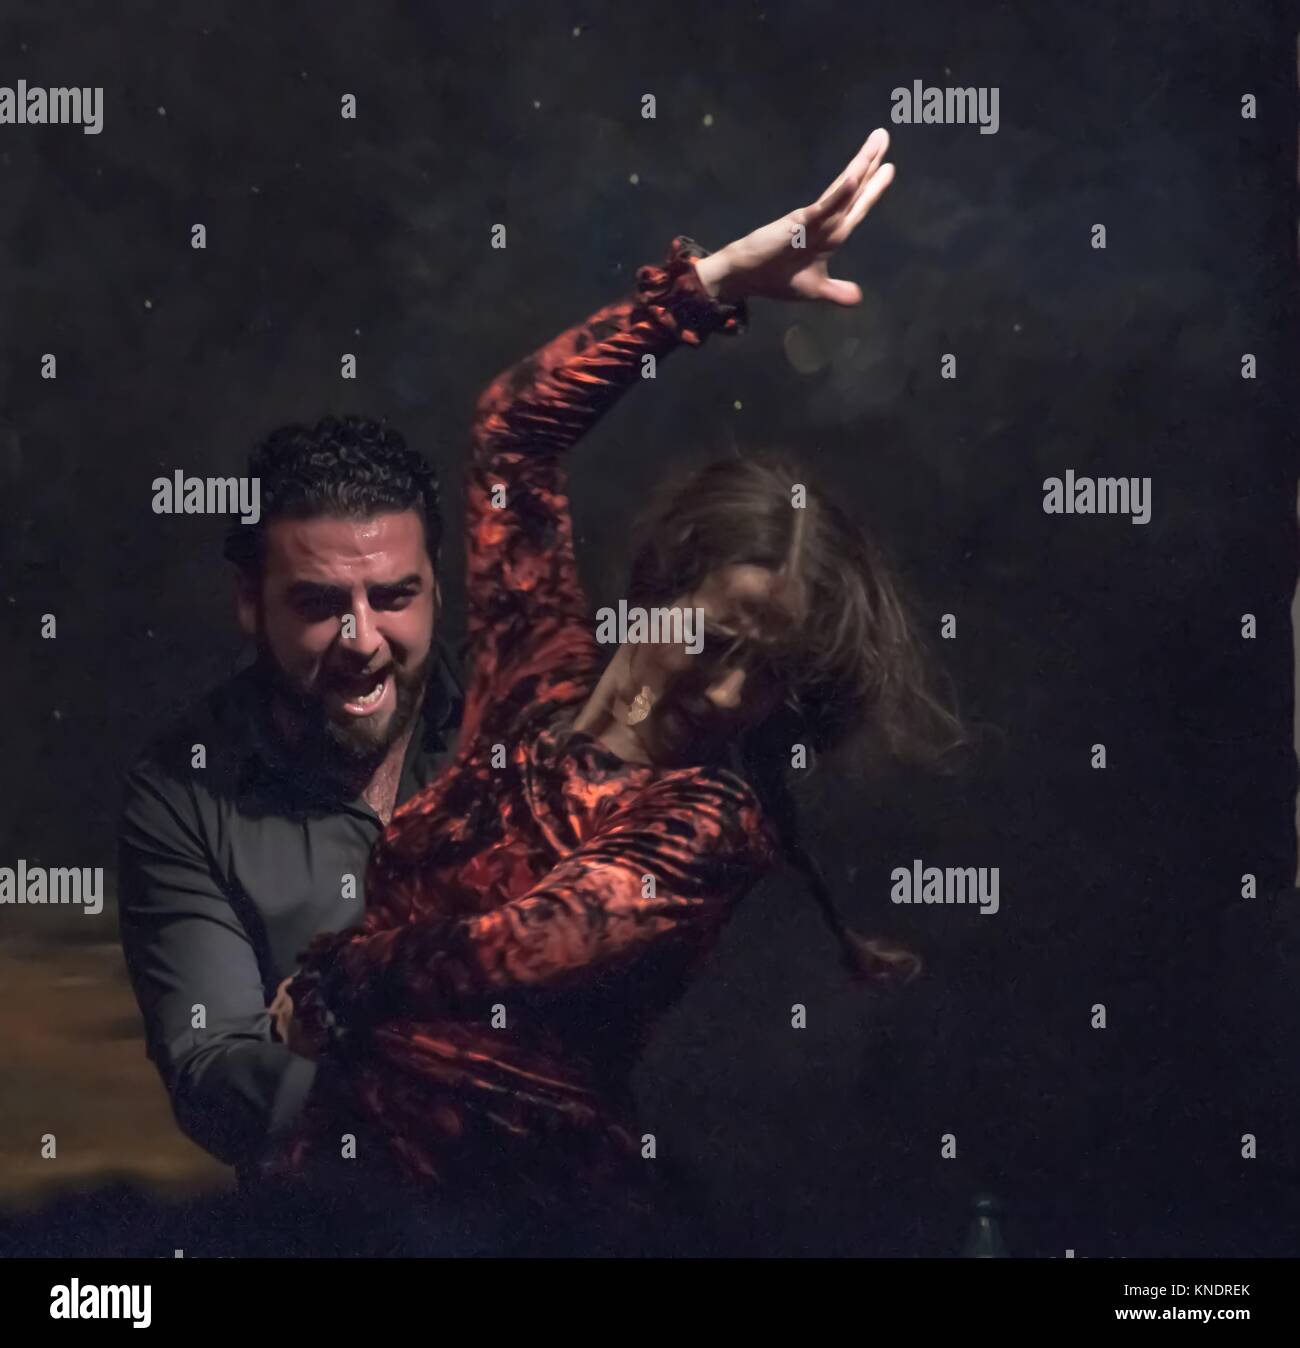 Appassionato di ballo flamenco. La Danzatrice con dishevelled capelli castani, sollevato la sua mano destra in condizioni di luce intensa. Il cantante dietro di lei. Foto Stock